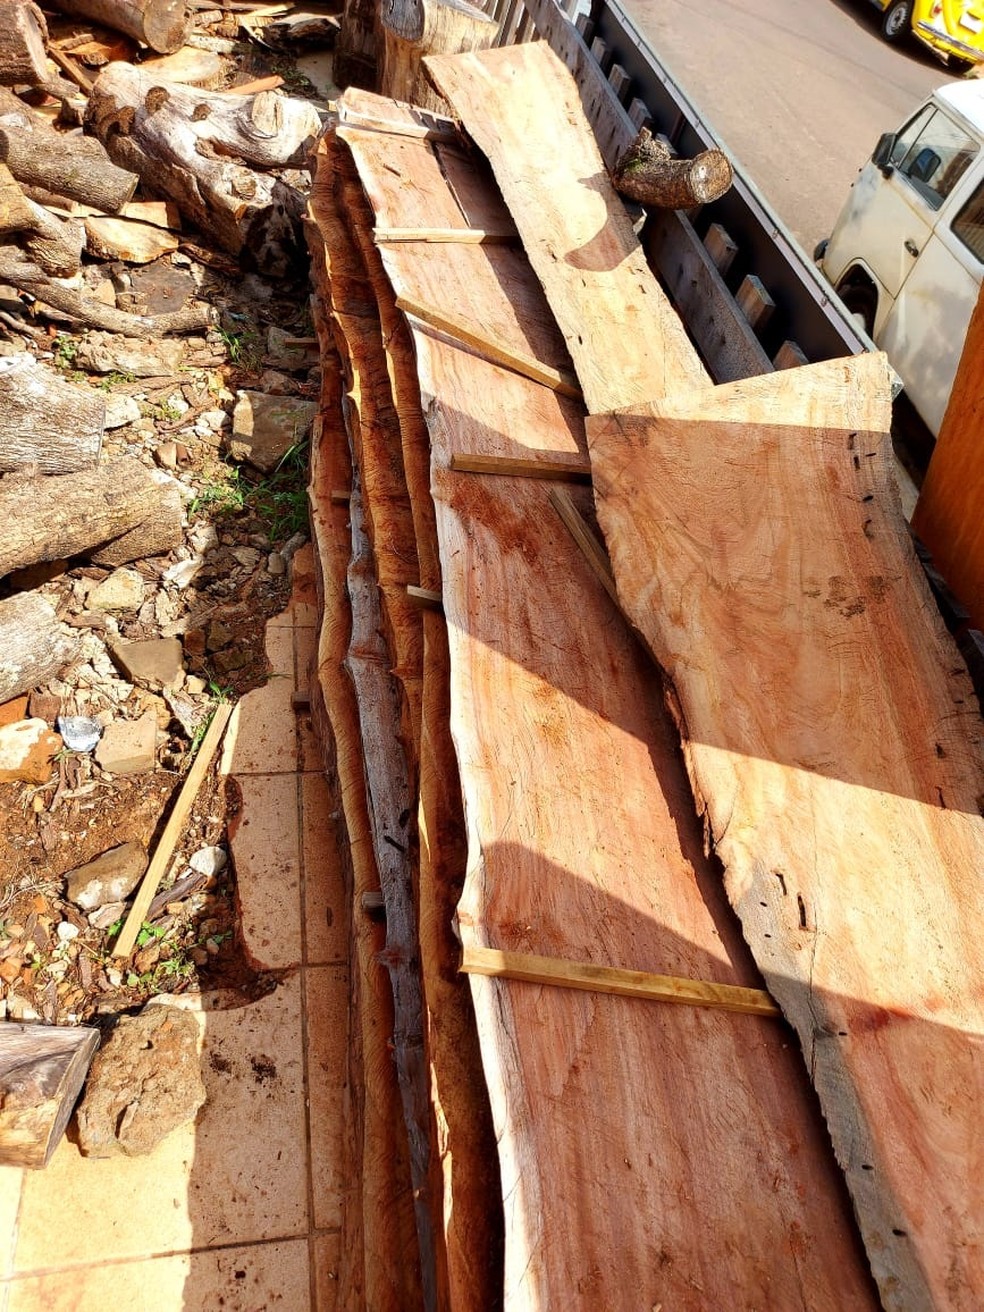 Fiscalização constatou depósito irregular de madeira nativa em Presidente Prudente — Foto: Polícia Militar Ambiental